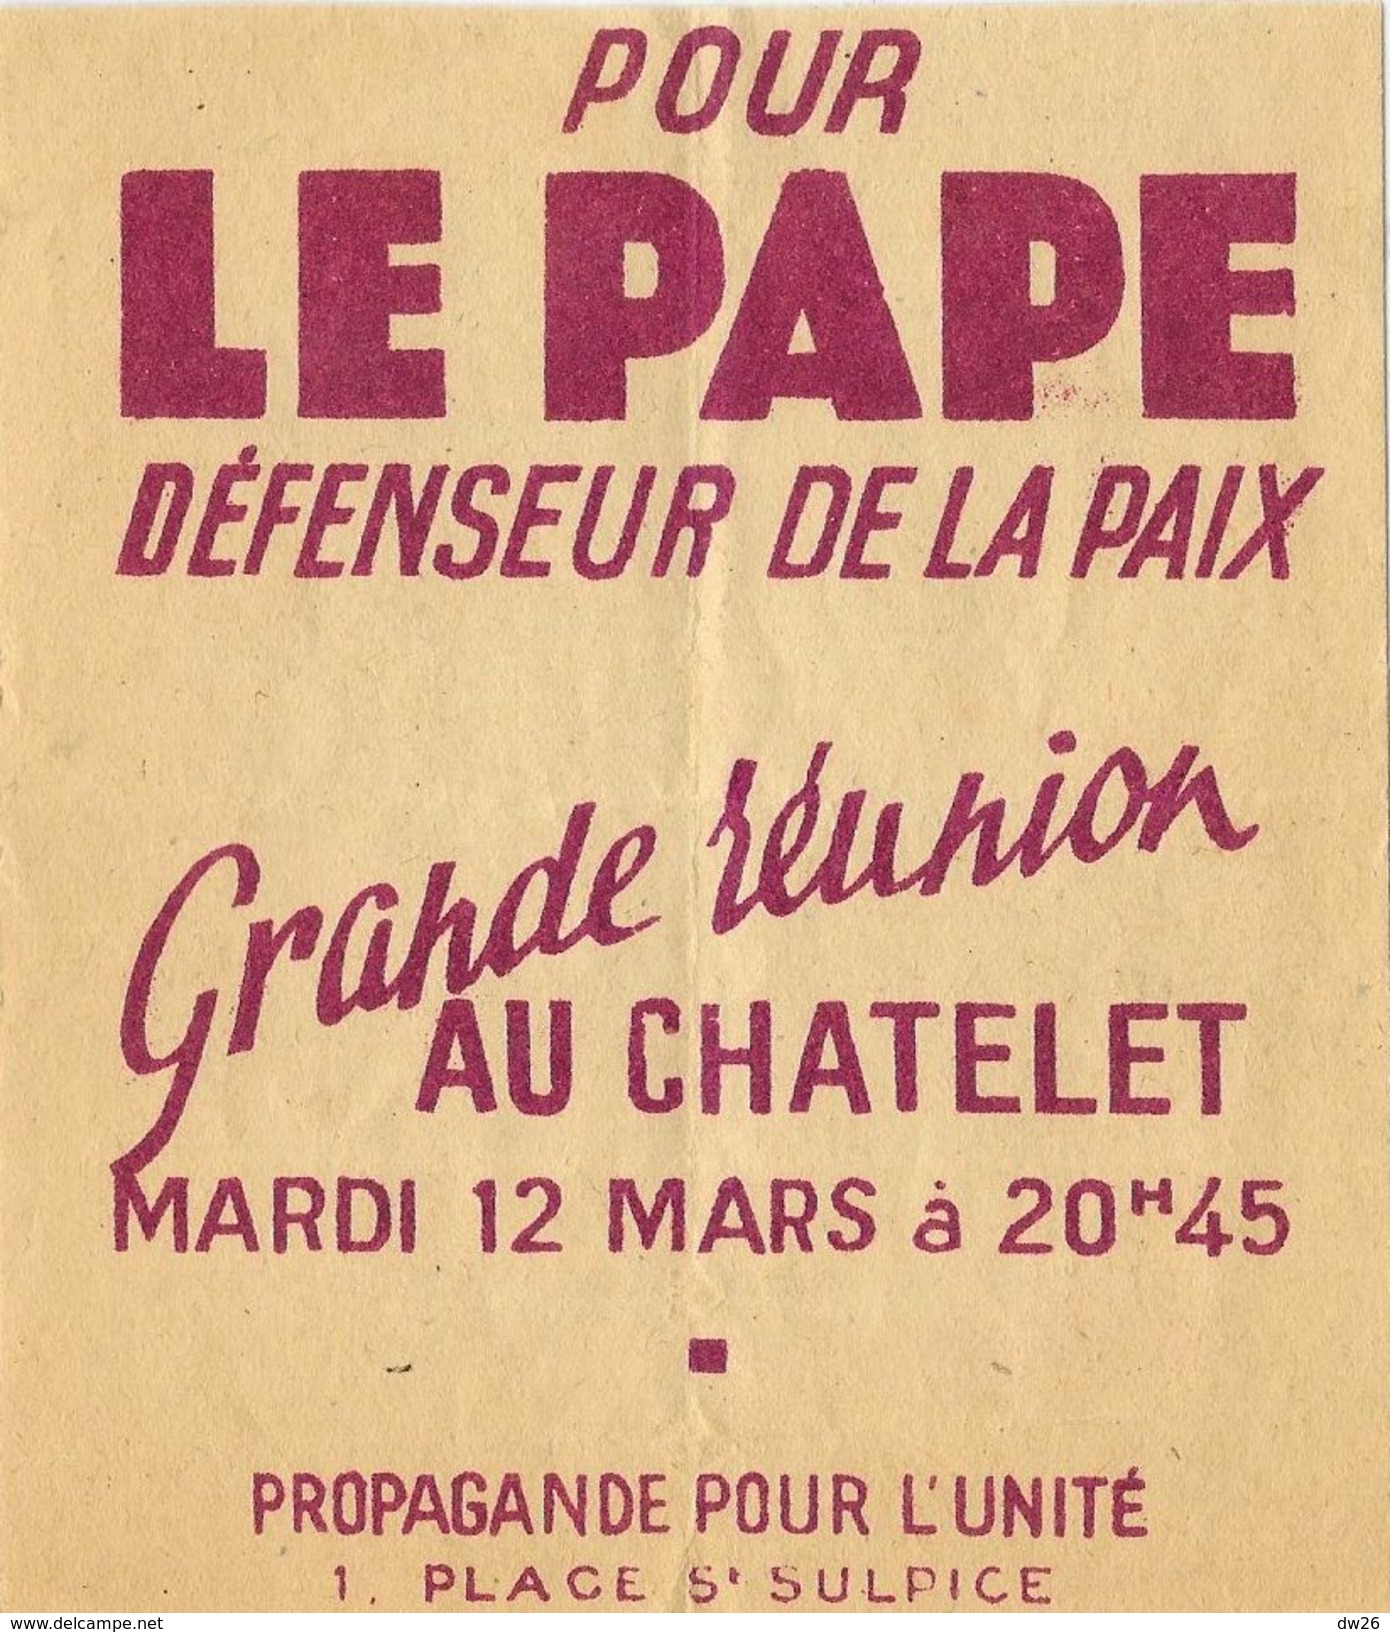 Affiche (Flyer De 10 X 12 Cm): Pour Le Pape, Défenseur De La Paix, Réunion Au Chatelet Mardi 12 Mars (propagande) - Affiches